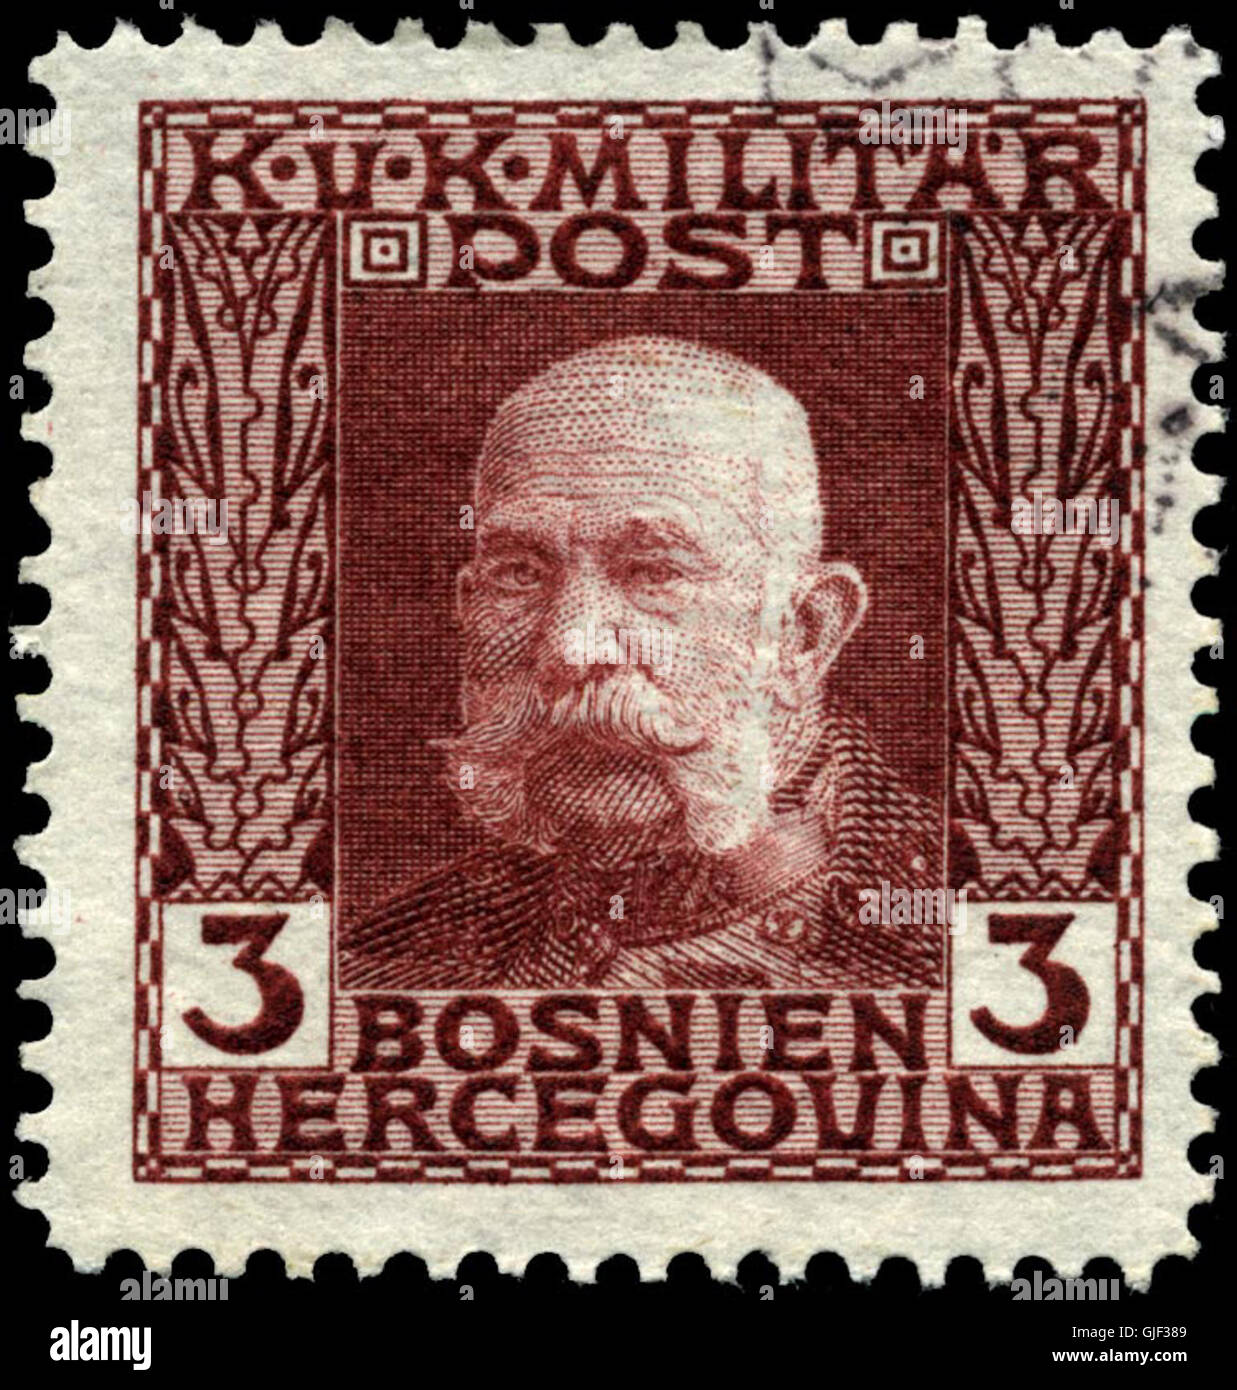 Stempel Bosnien 1912 3 h Stockfoto